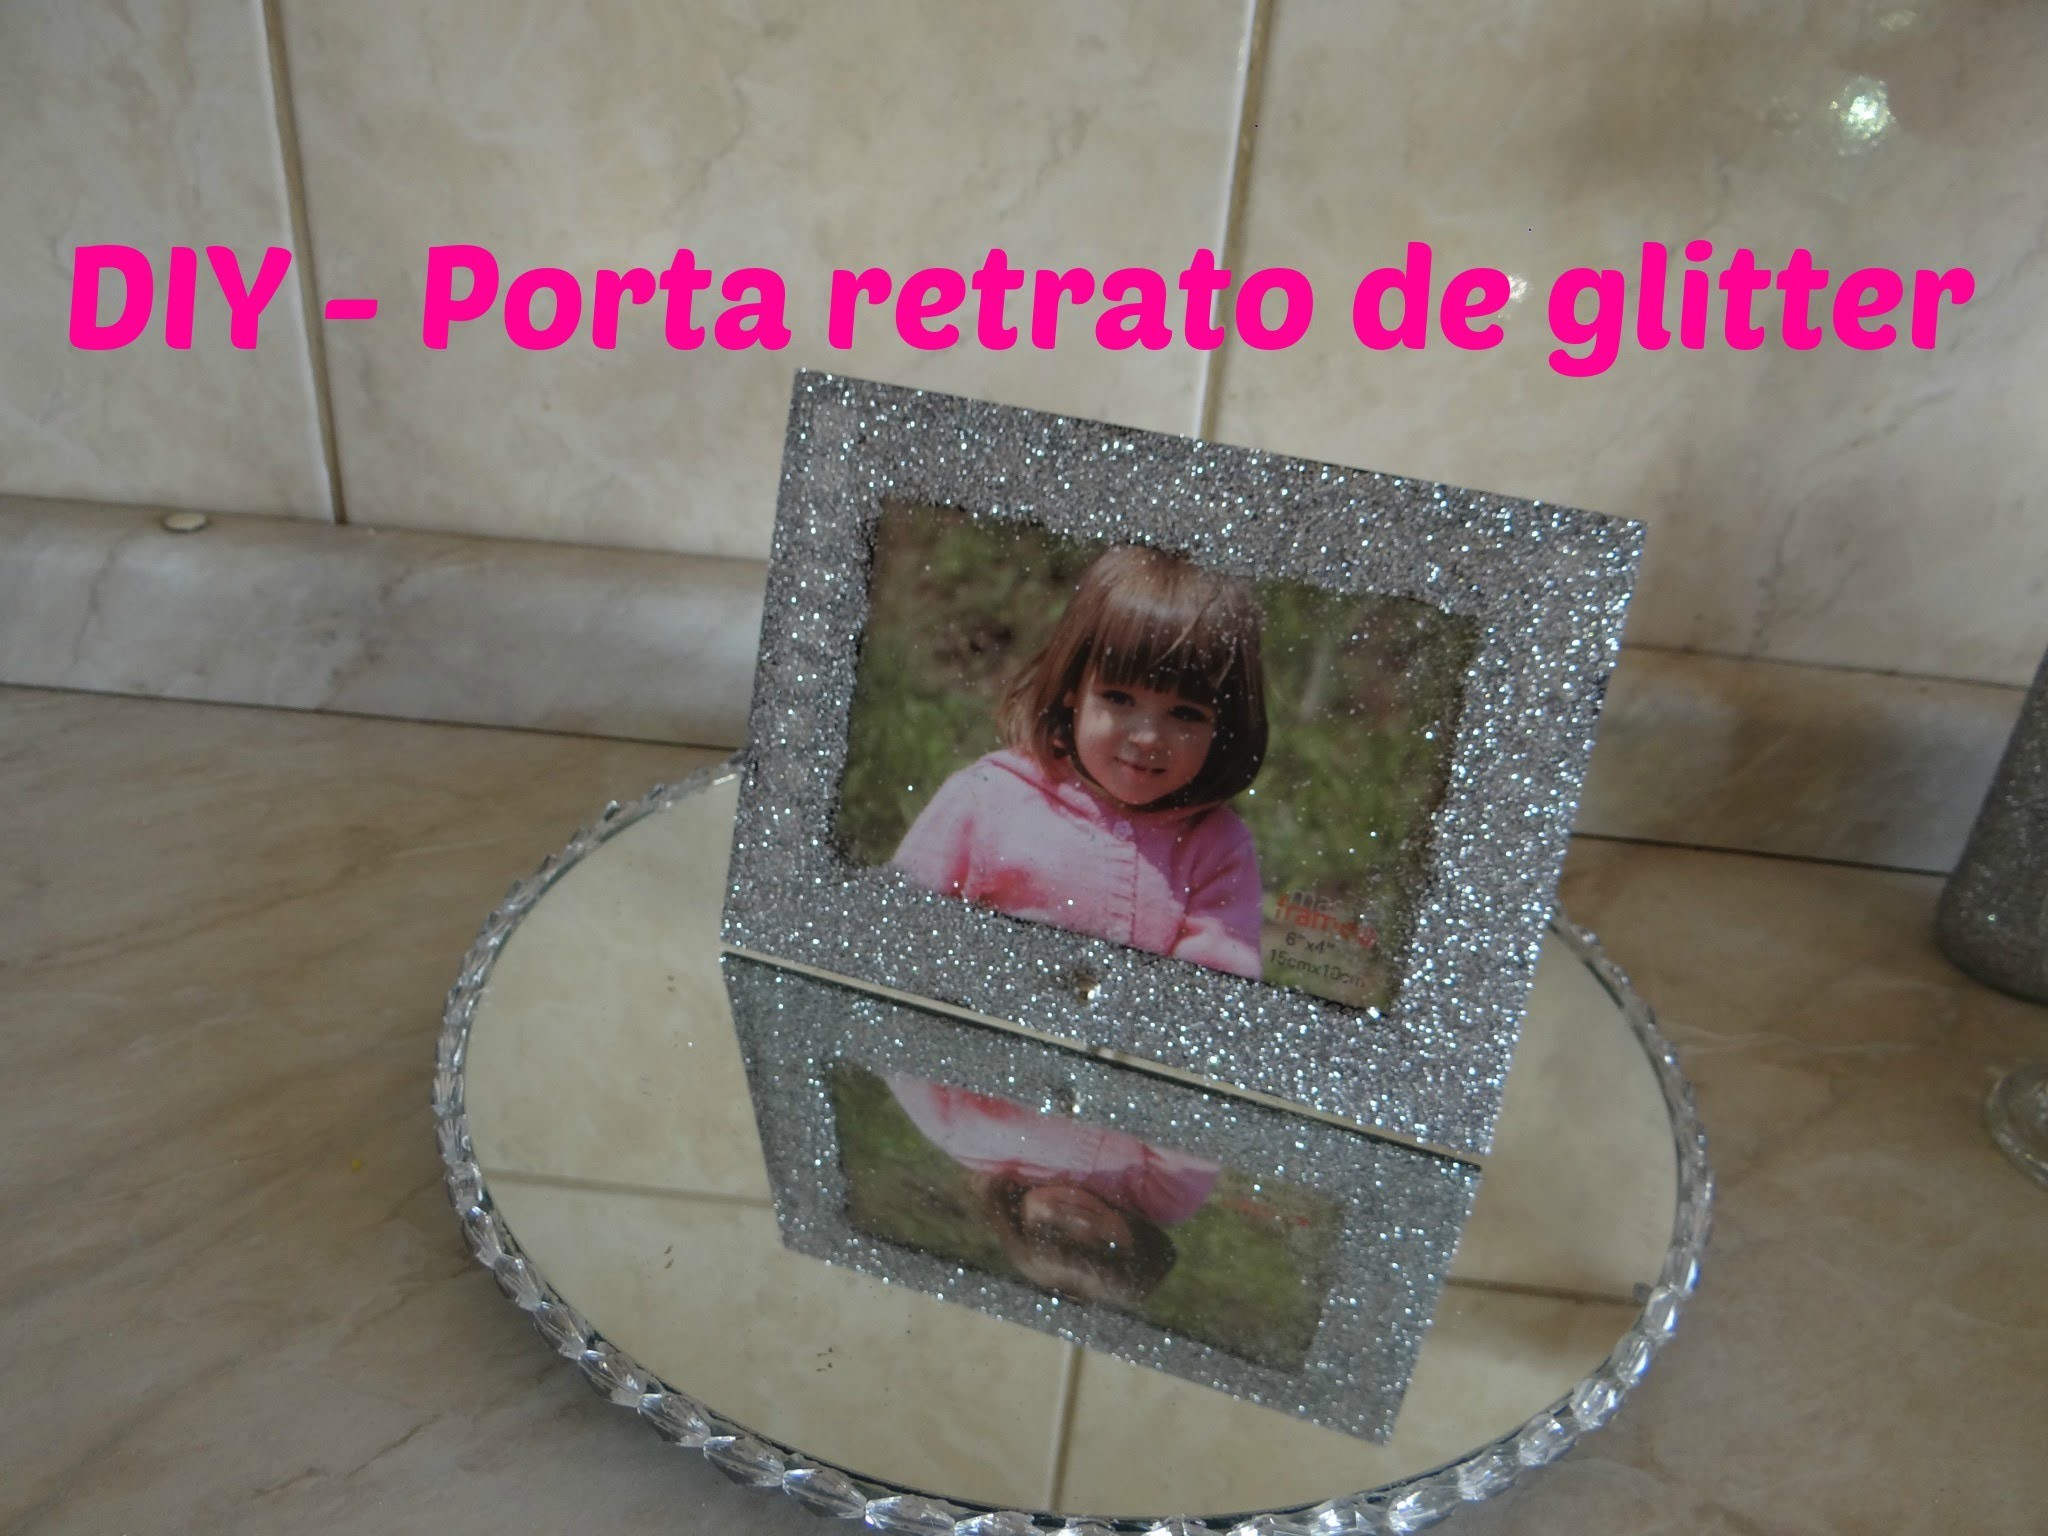 DIY - Porta retrato glitter